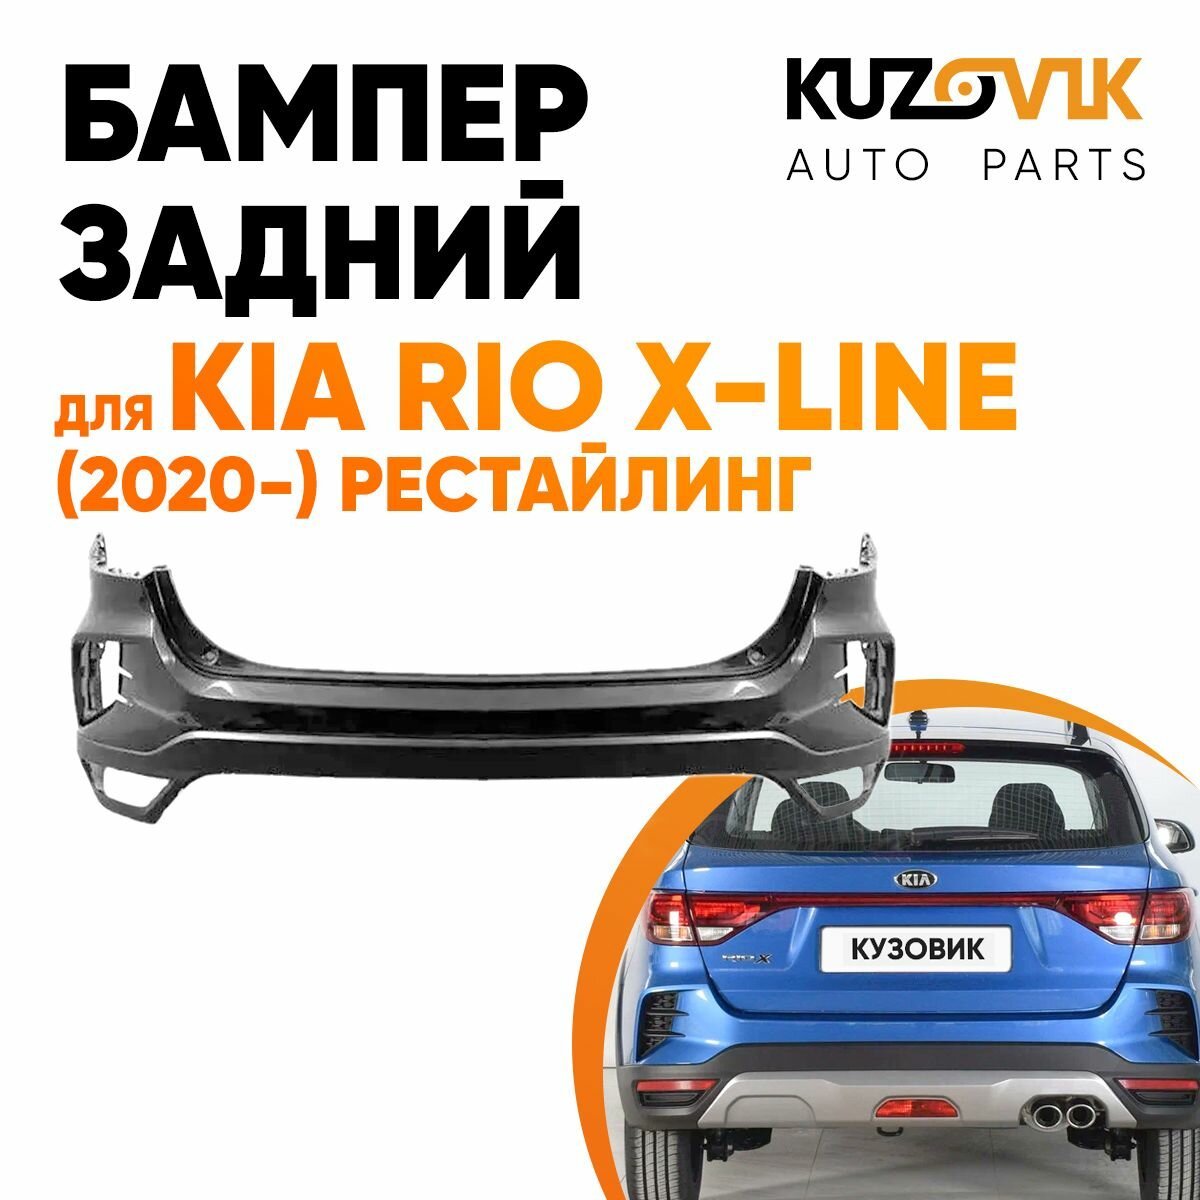 Бампер задний Kia Rio X-Line (2020-) рестайлинг верхняя часть